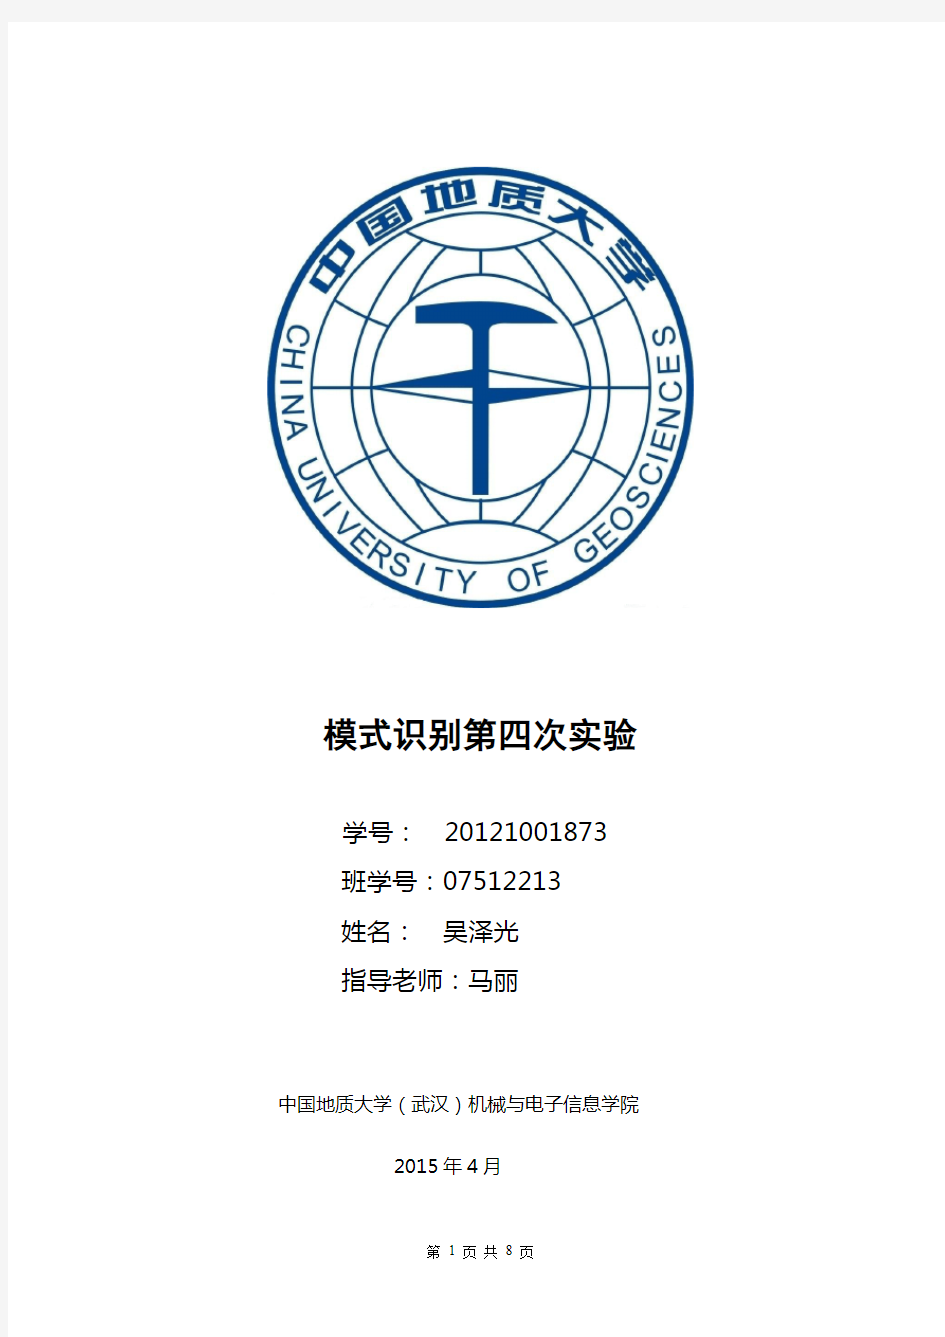 中国地质大学(武汉)模式识别第四次实验：PCA